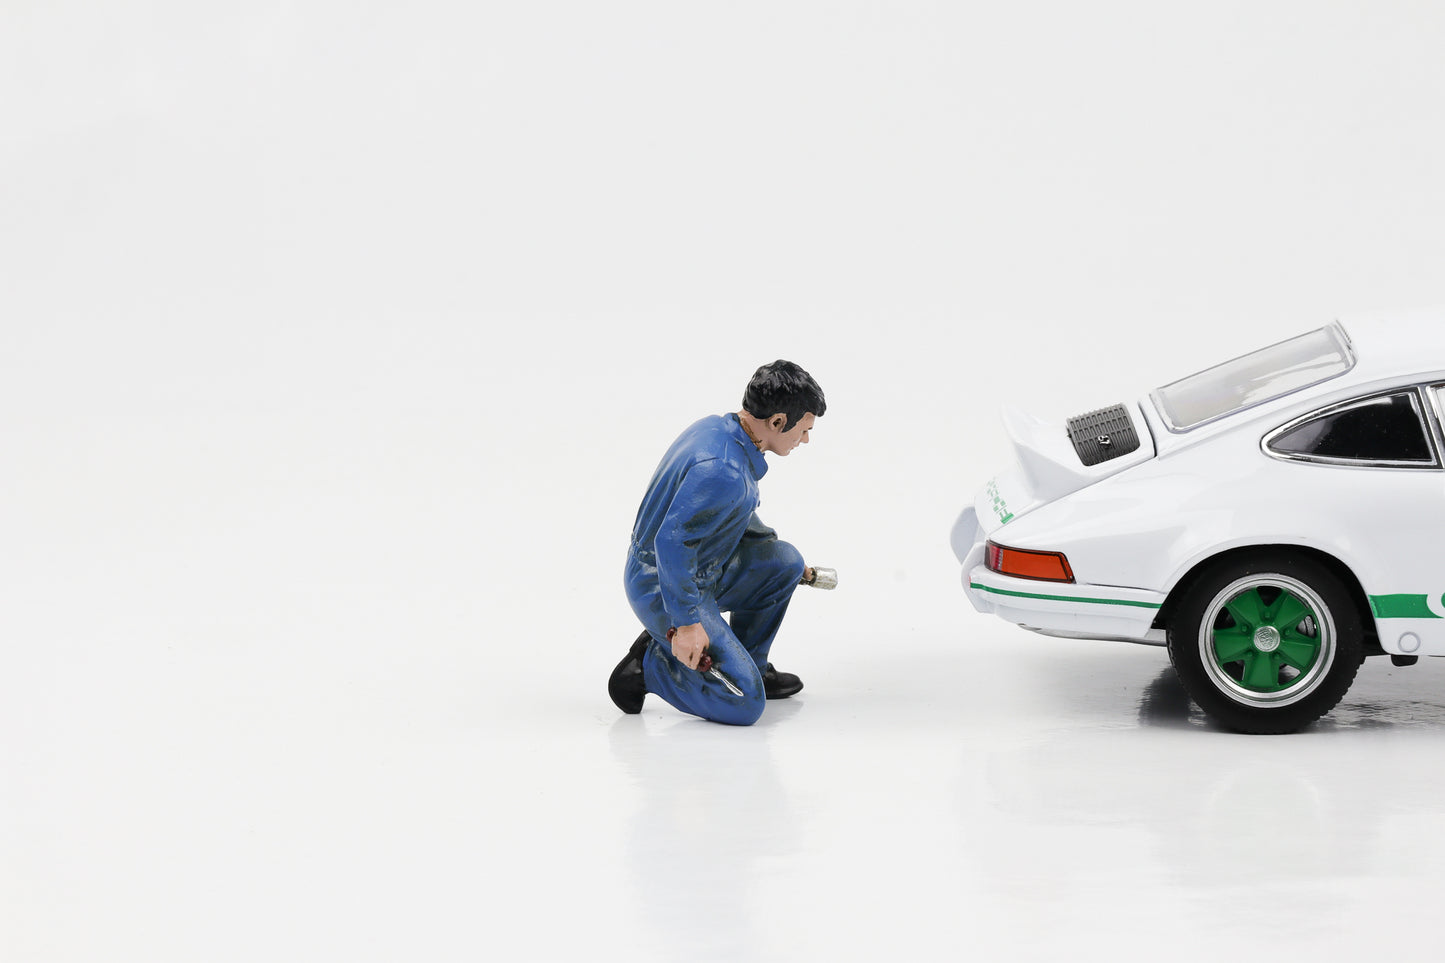 1:24 figura meccanico di automobili Jerry cacciavite in ginocchio Figure di Diorama americano